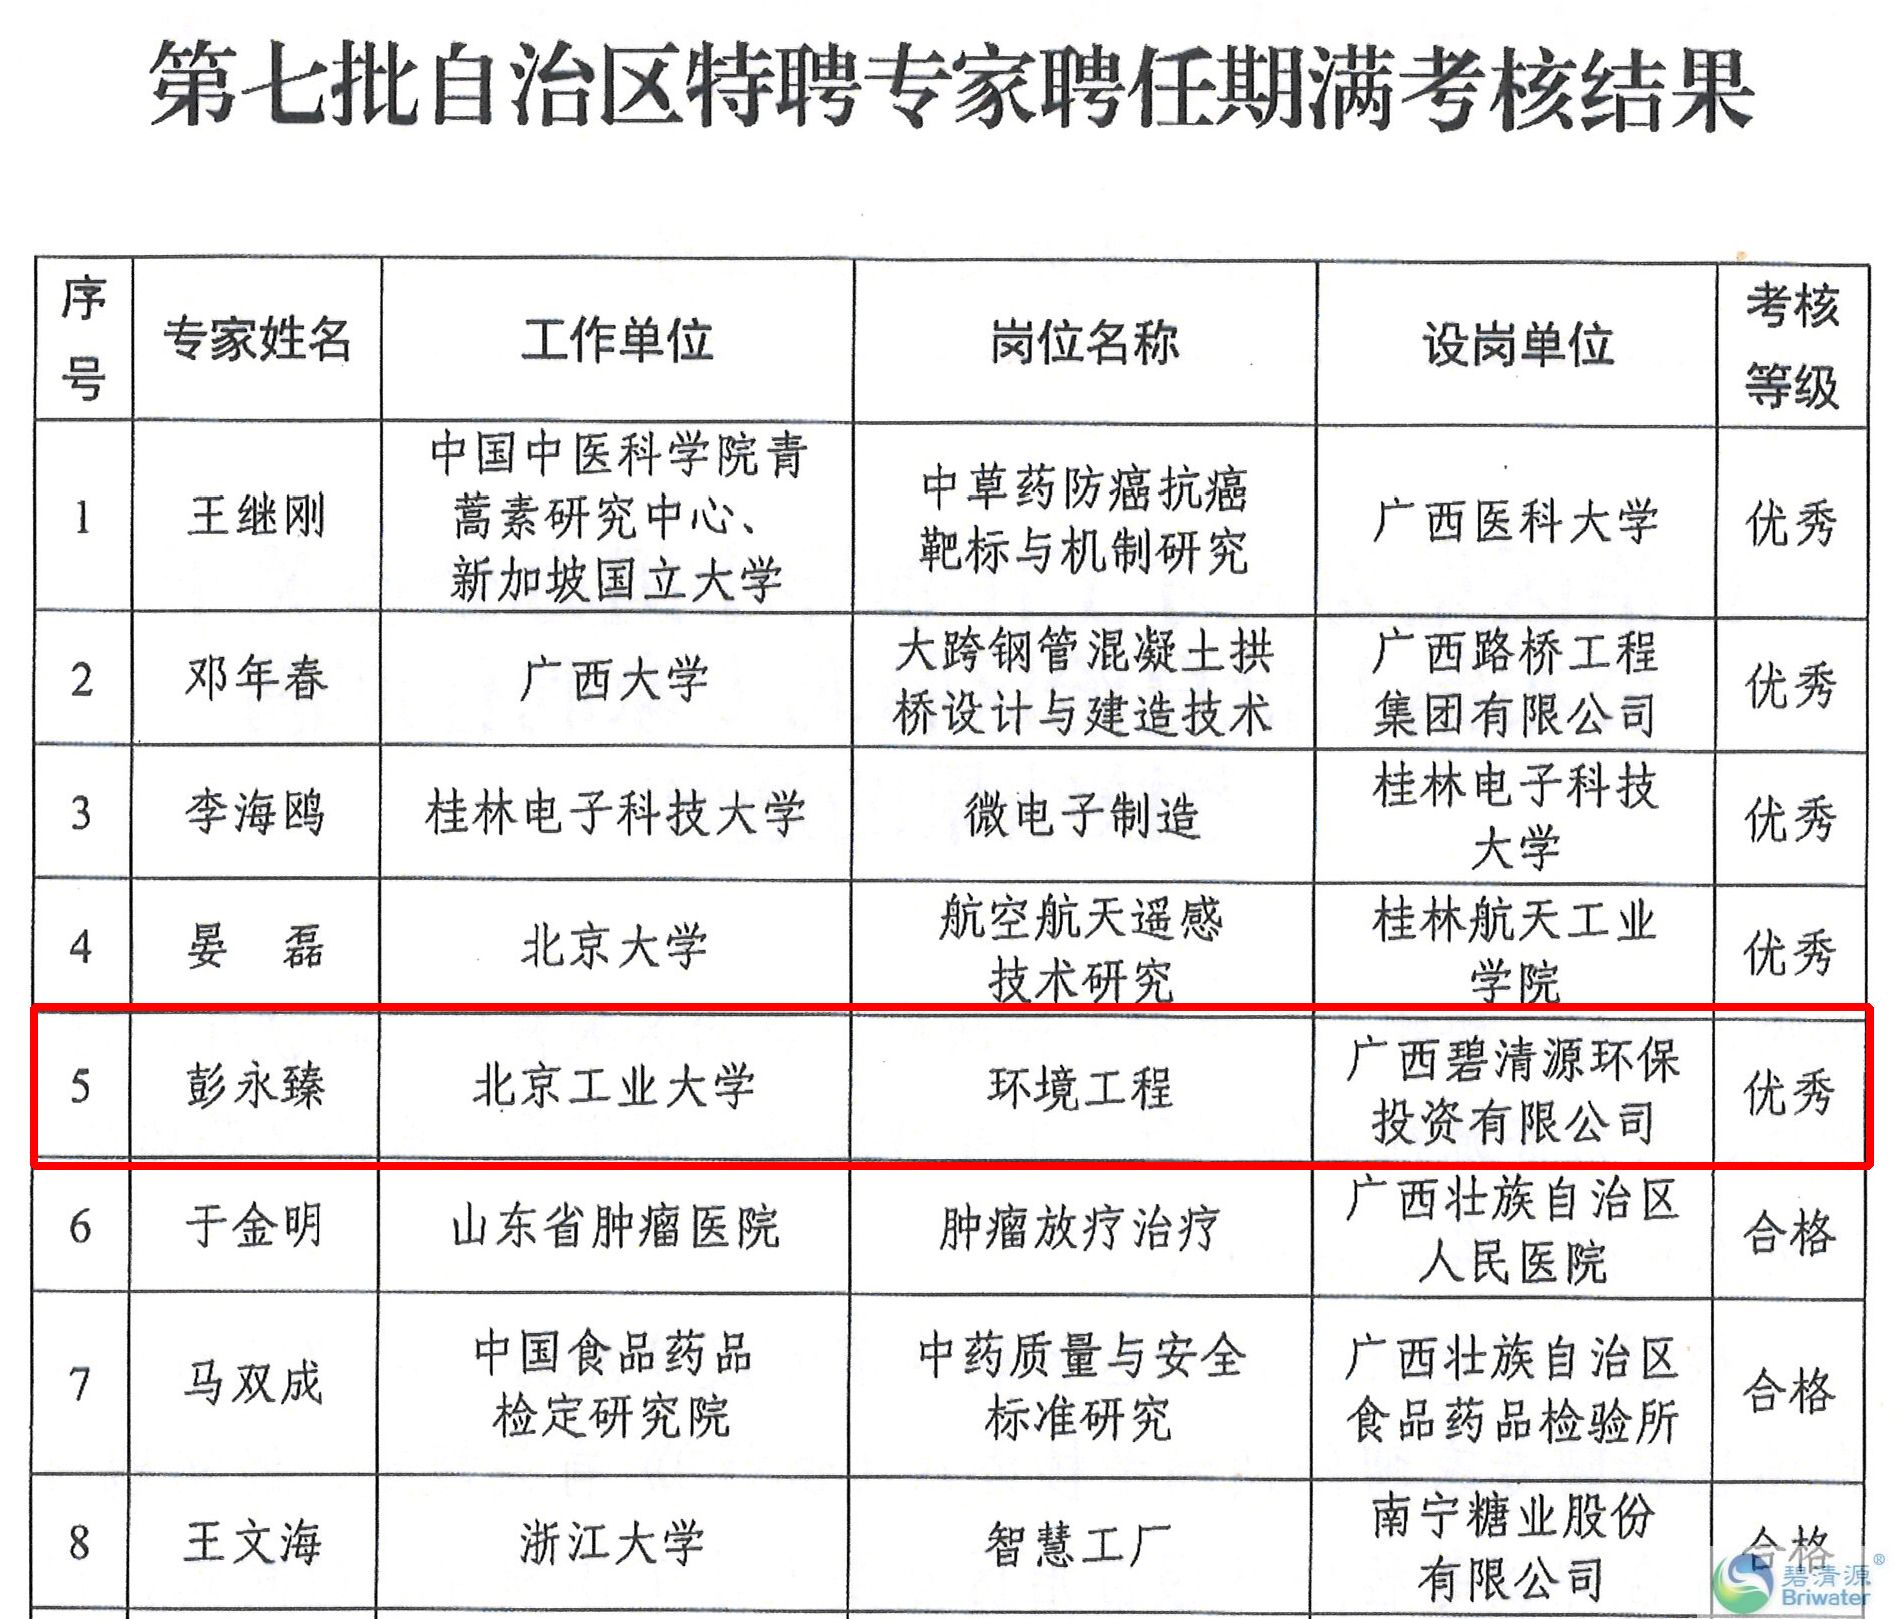 2022.4.30广西壮族自治区第七批特聘专家期满考核结果-2.jpg